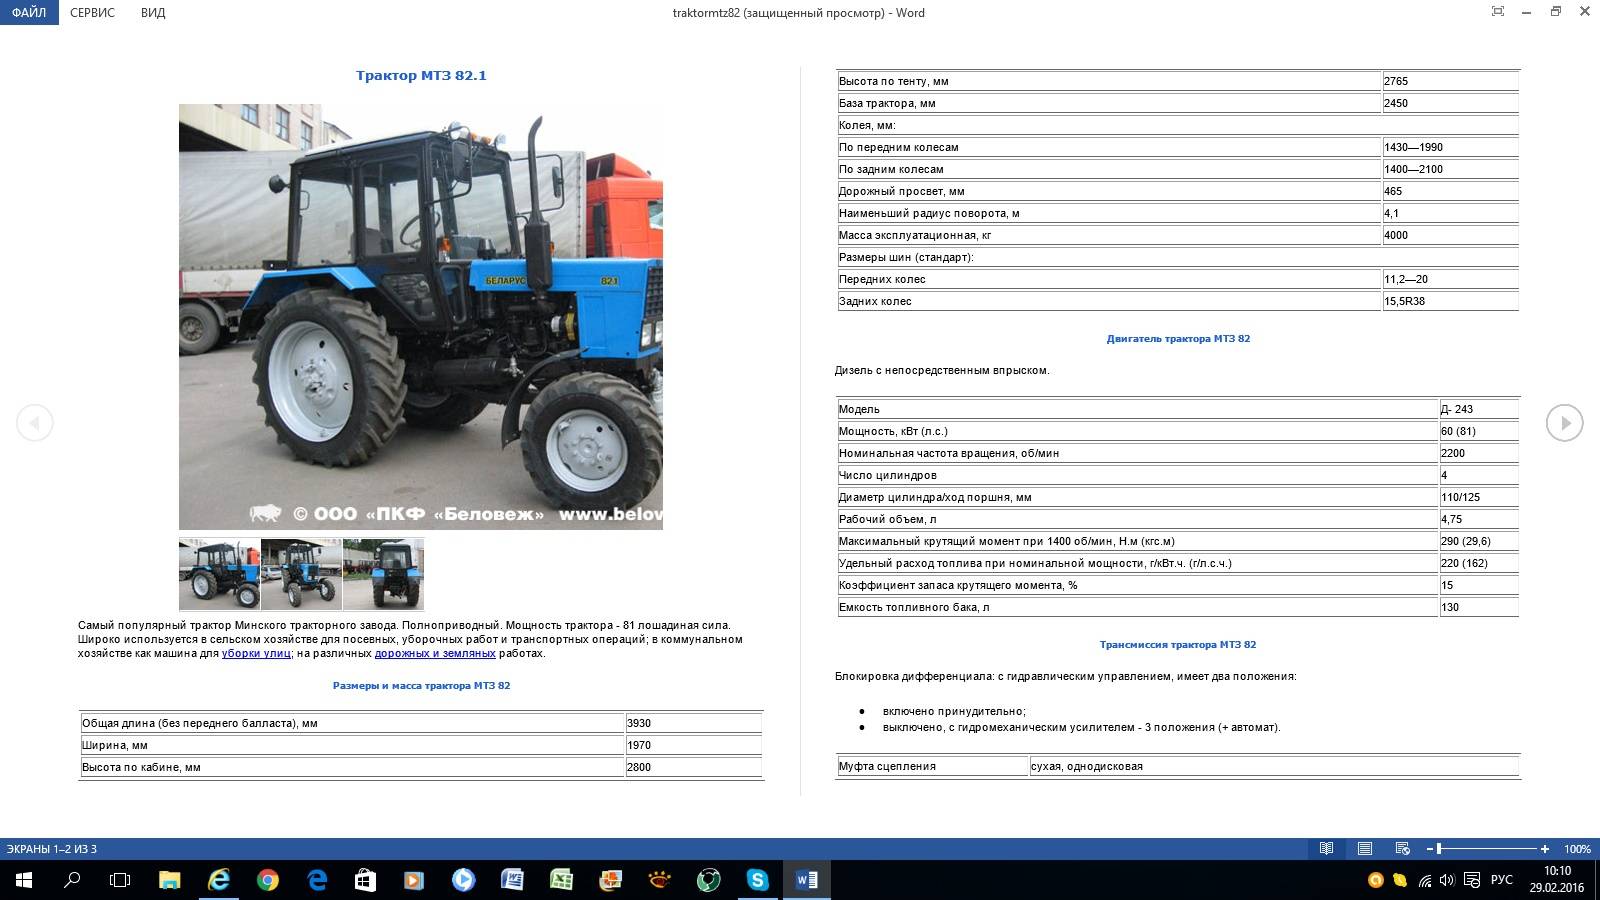 Мтз-892 (беларус): технические характеристики трактора, расход топлива